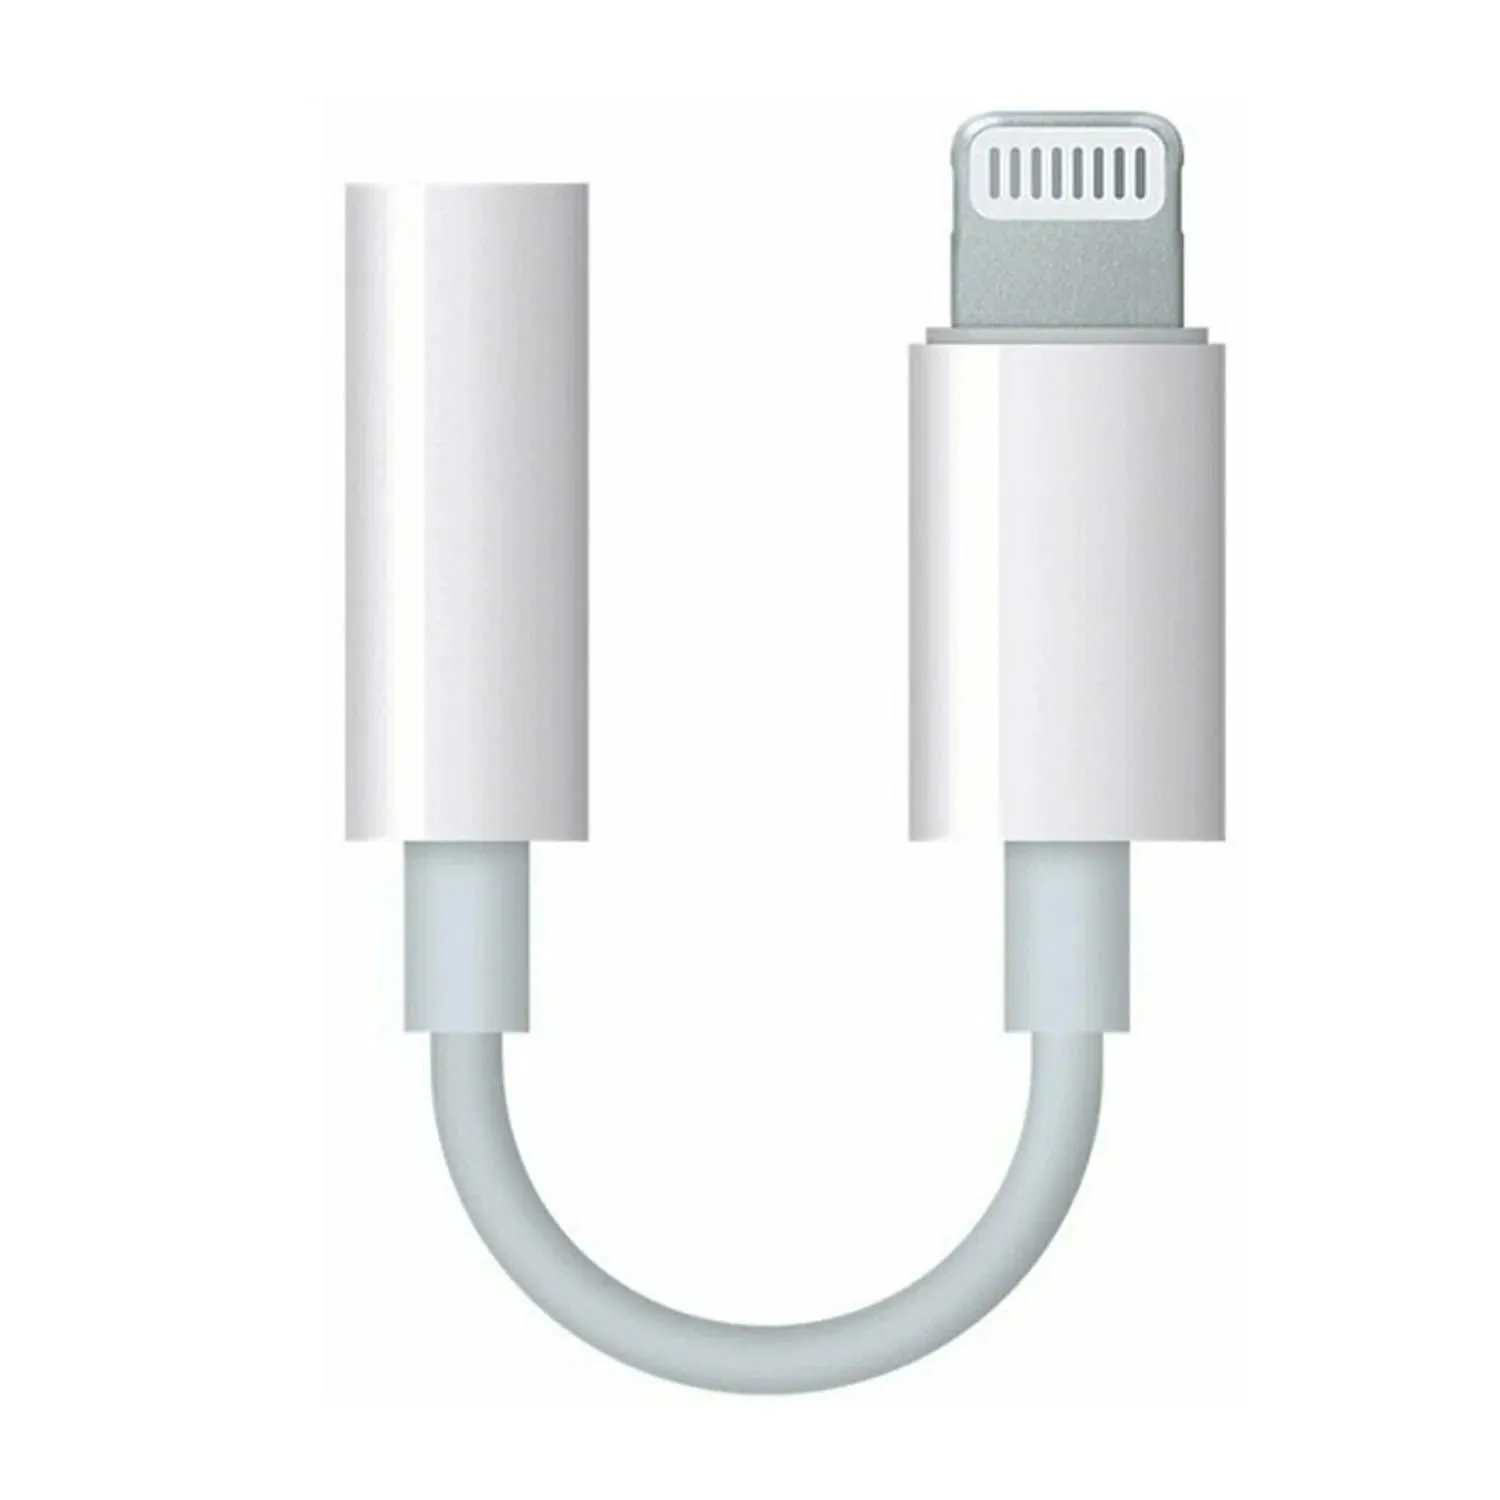 Кабель переходник для Apple iPhone 7, 7 Plus Lightning - 3.5mm Jack (белый) для iOS выше 10.3